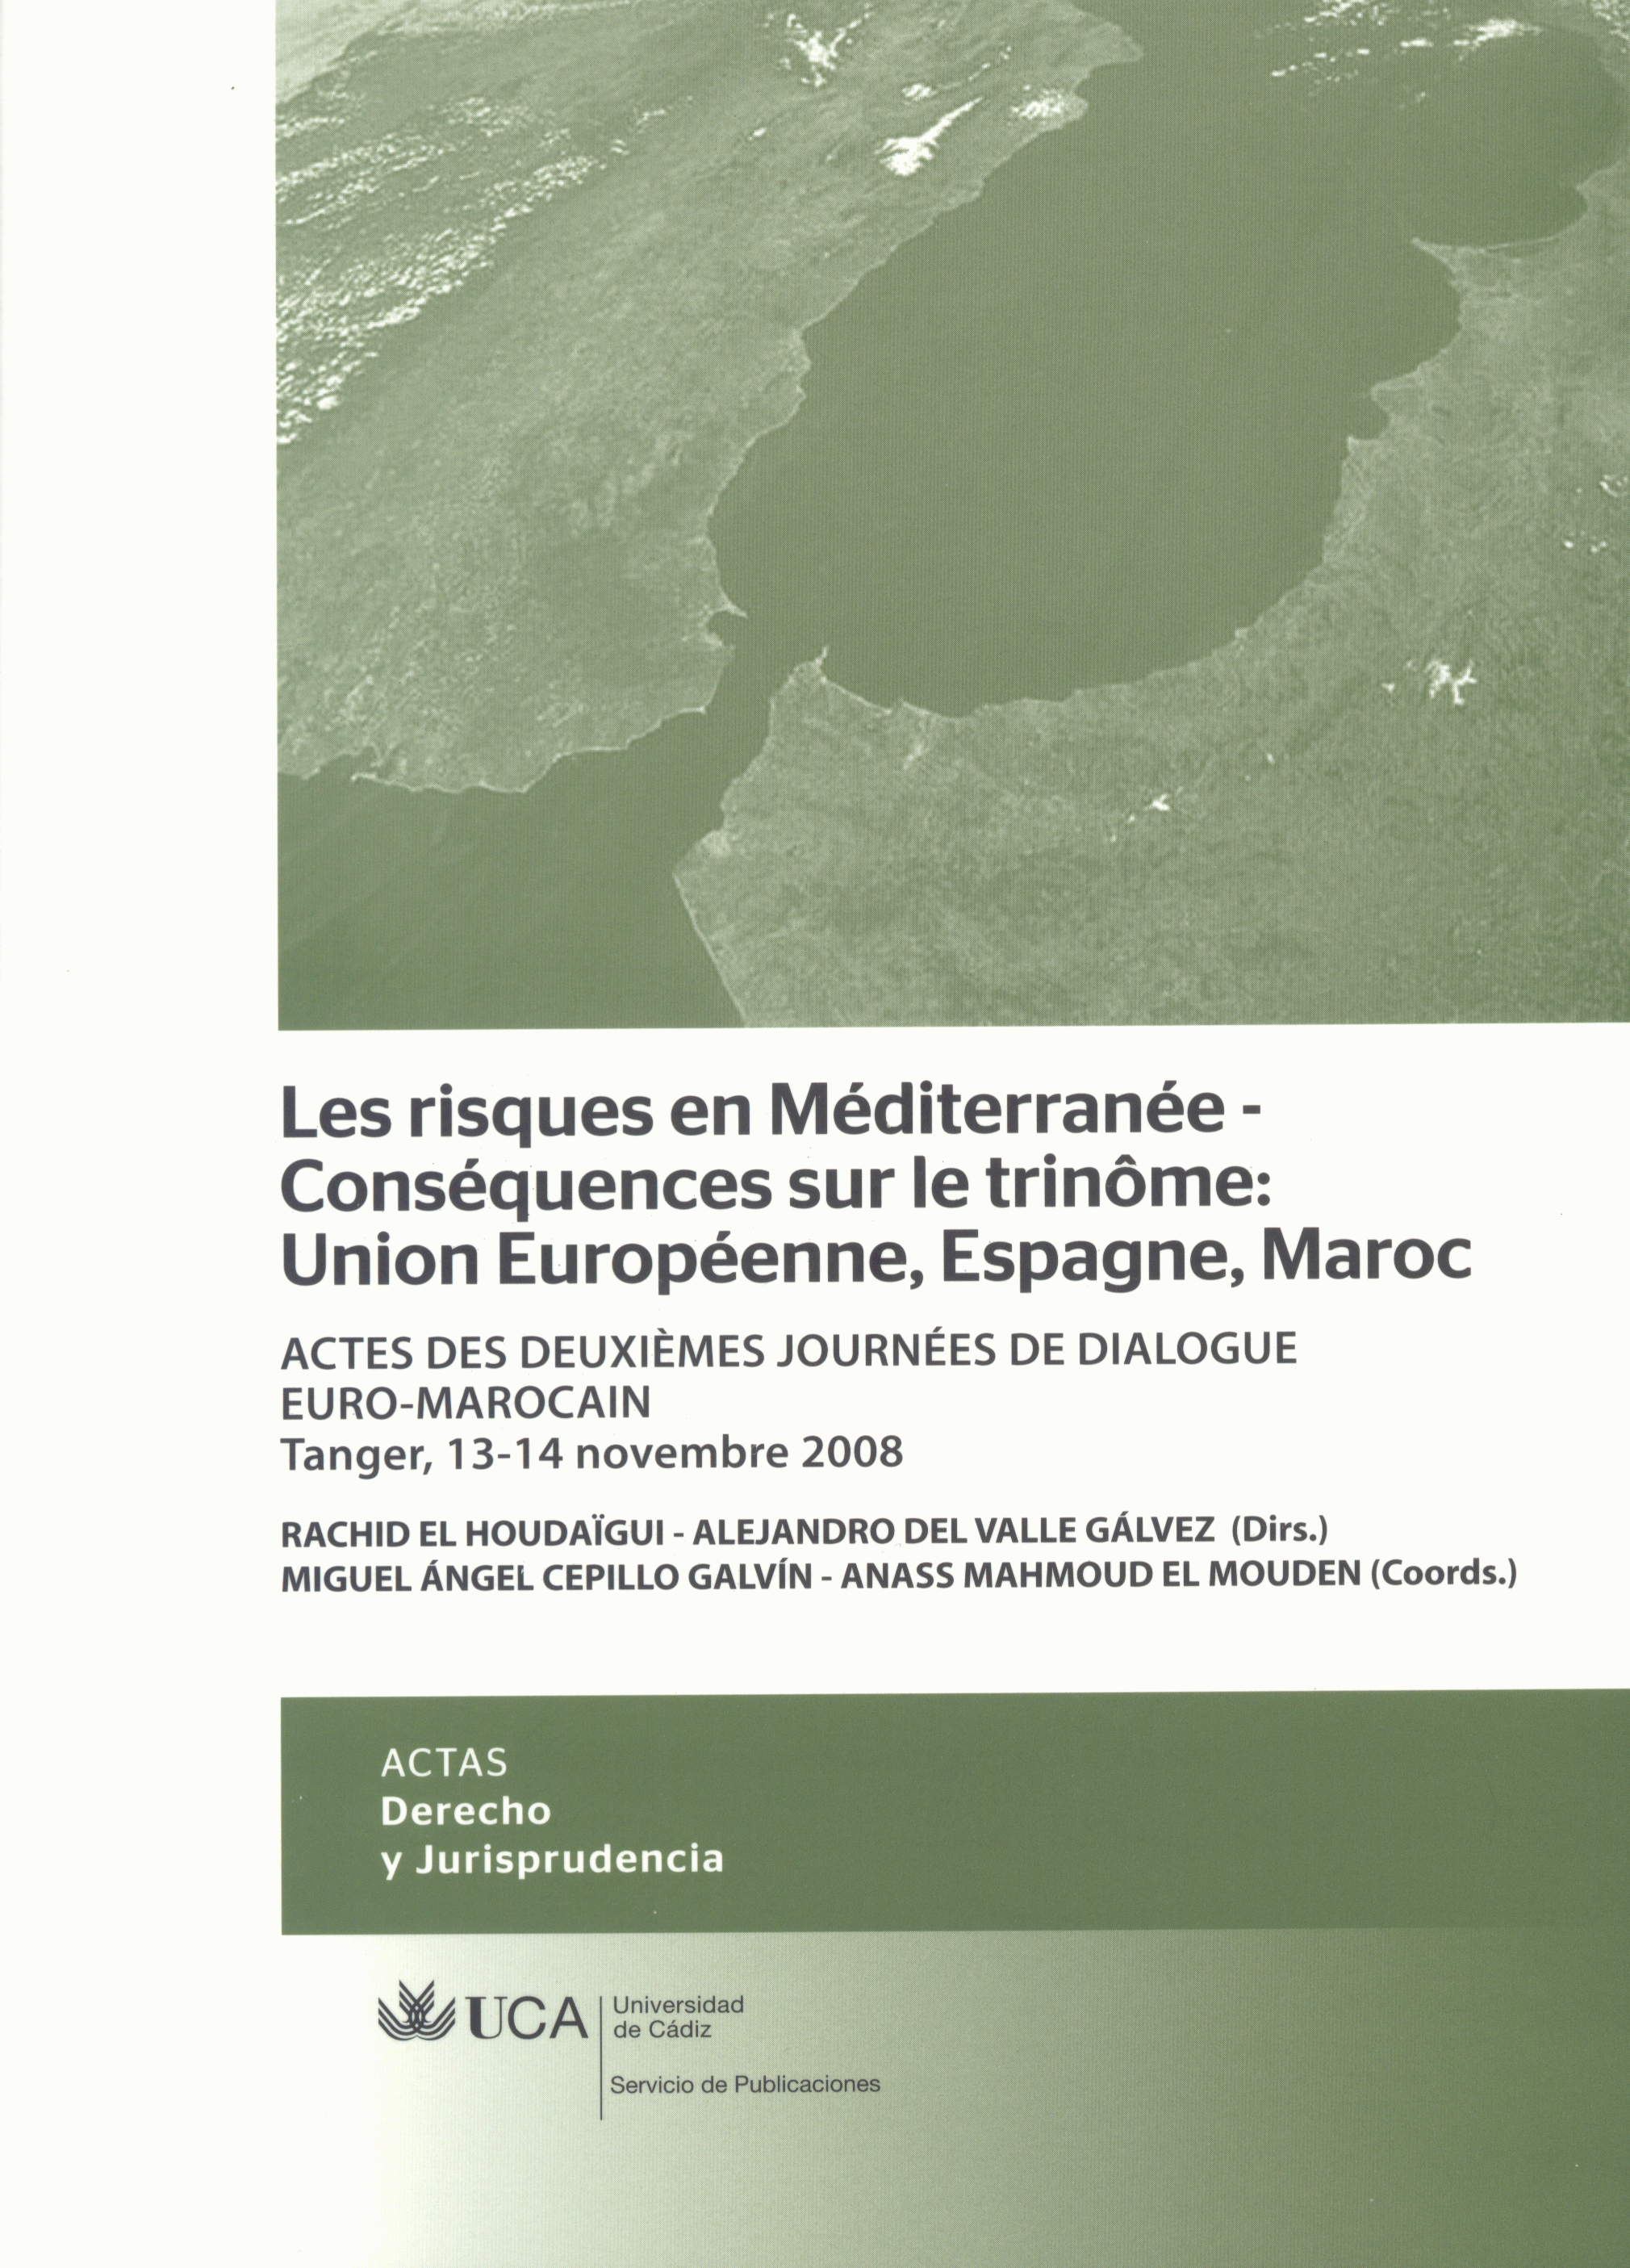 Novedad Editorial: Les risques en Méditerranée. Nuevo libro de la serie de Estudios Internacionales y Europeos de Cádiz